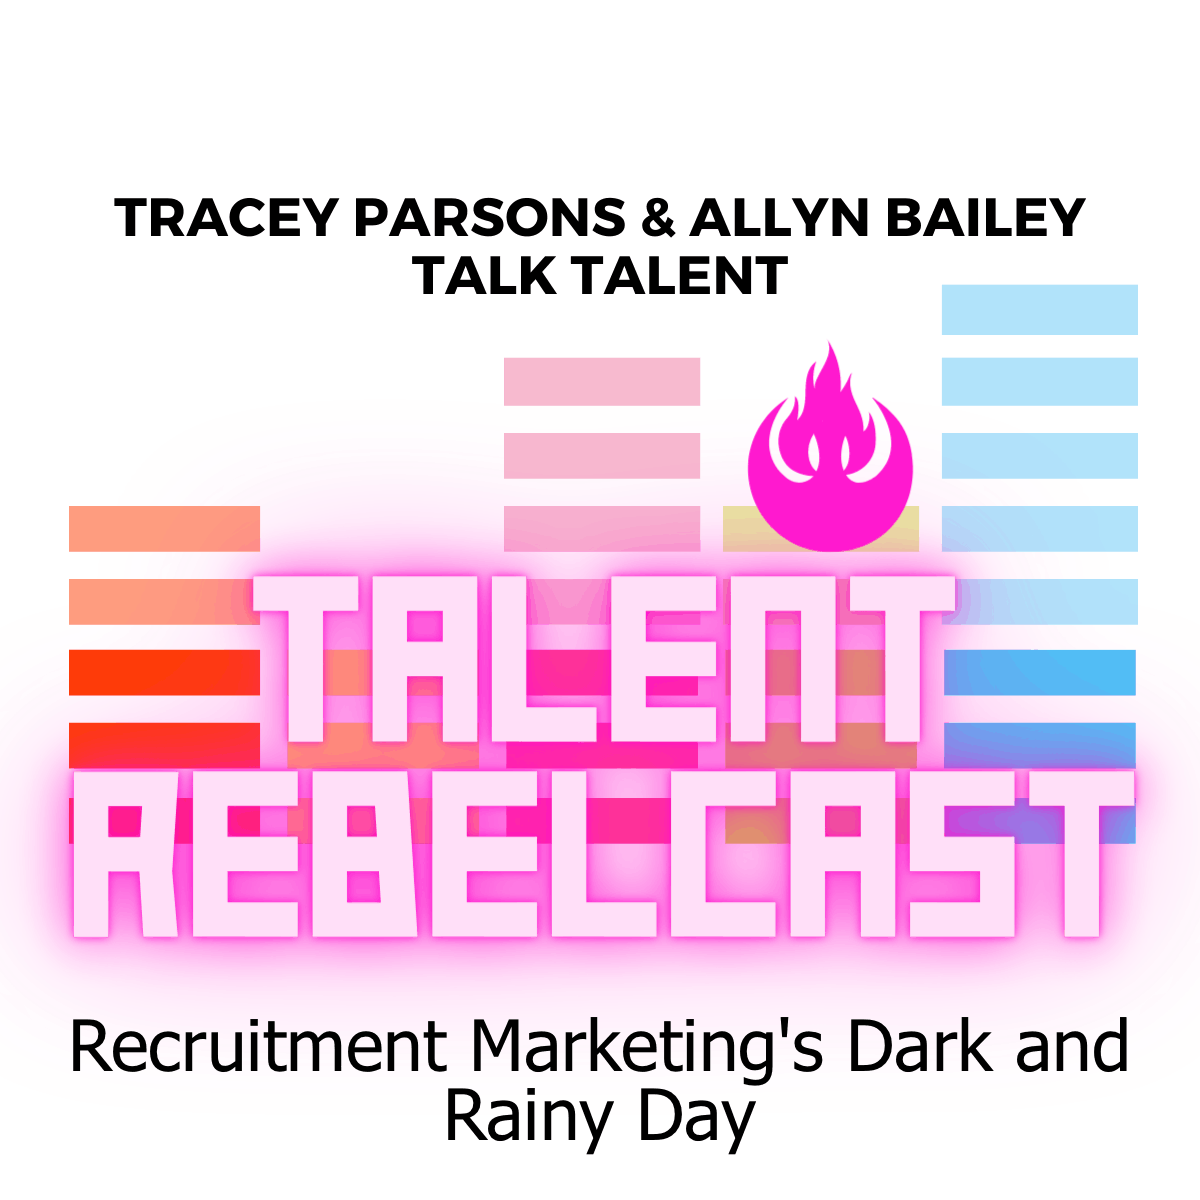 Recruitment Marketing's Dark and Rainy Day